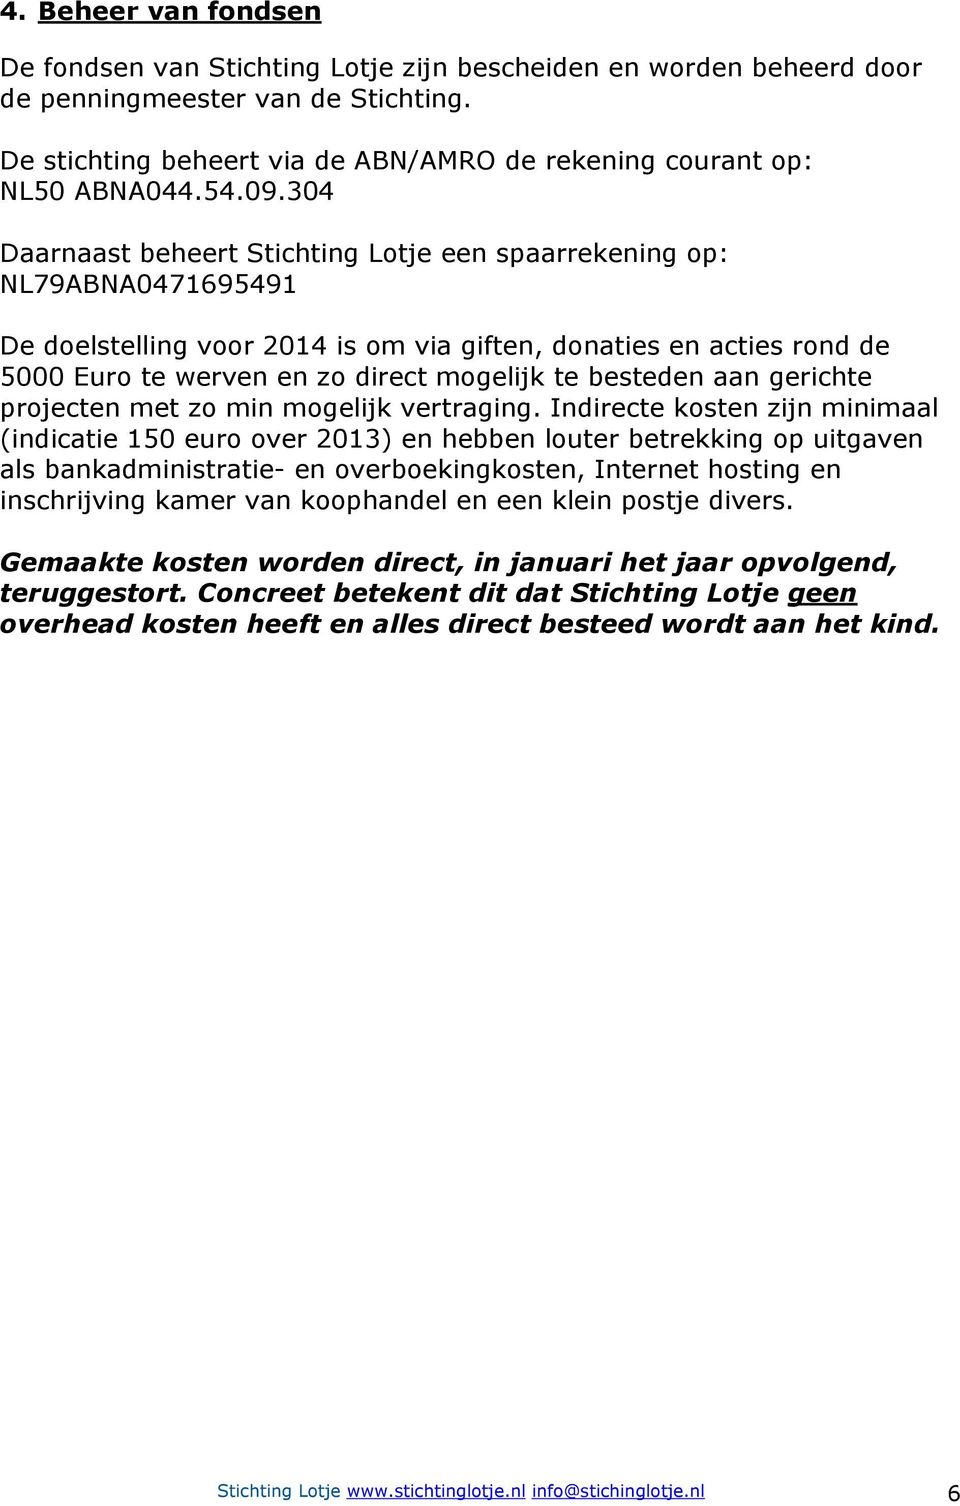 304 Daarnaast beheert Stichting Lotje een spaarrekening op: NL79ABNA0471695491 De doelstelling voor 2014 is om via giften, donaties en acties rond de 5000 Euro te werven en zo direct mogelijk te